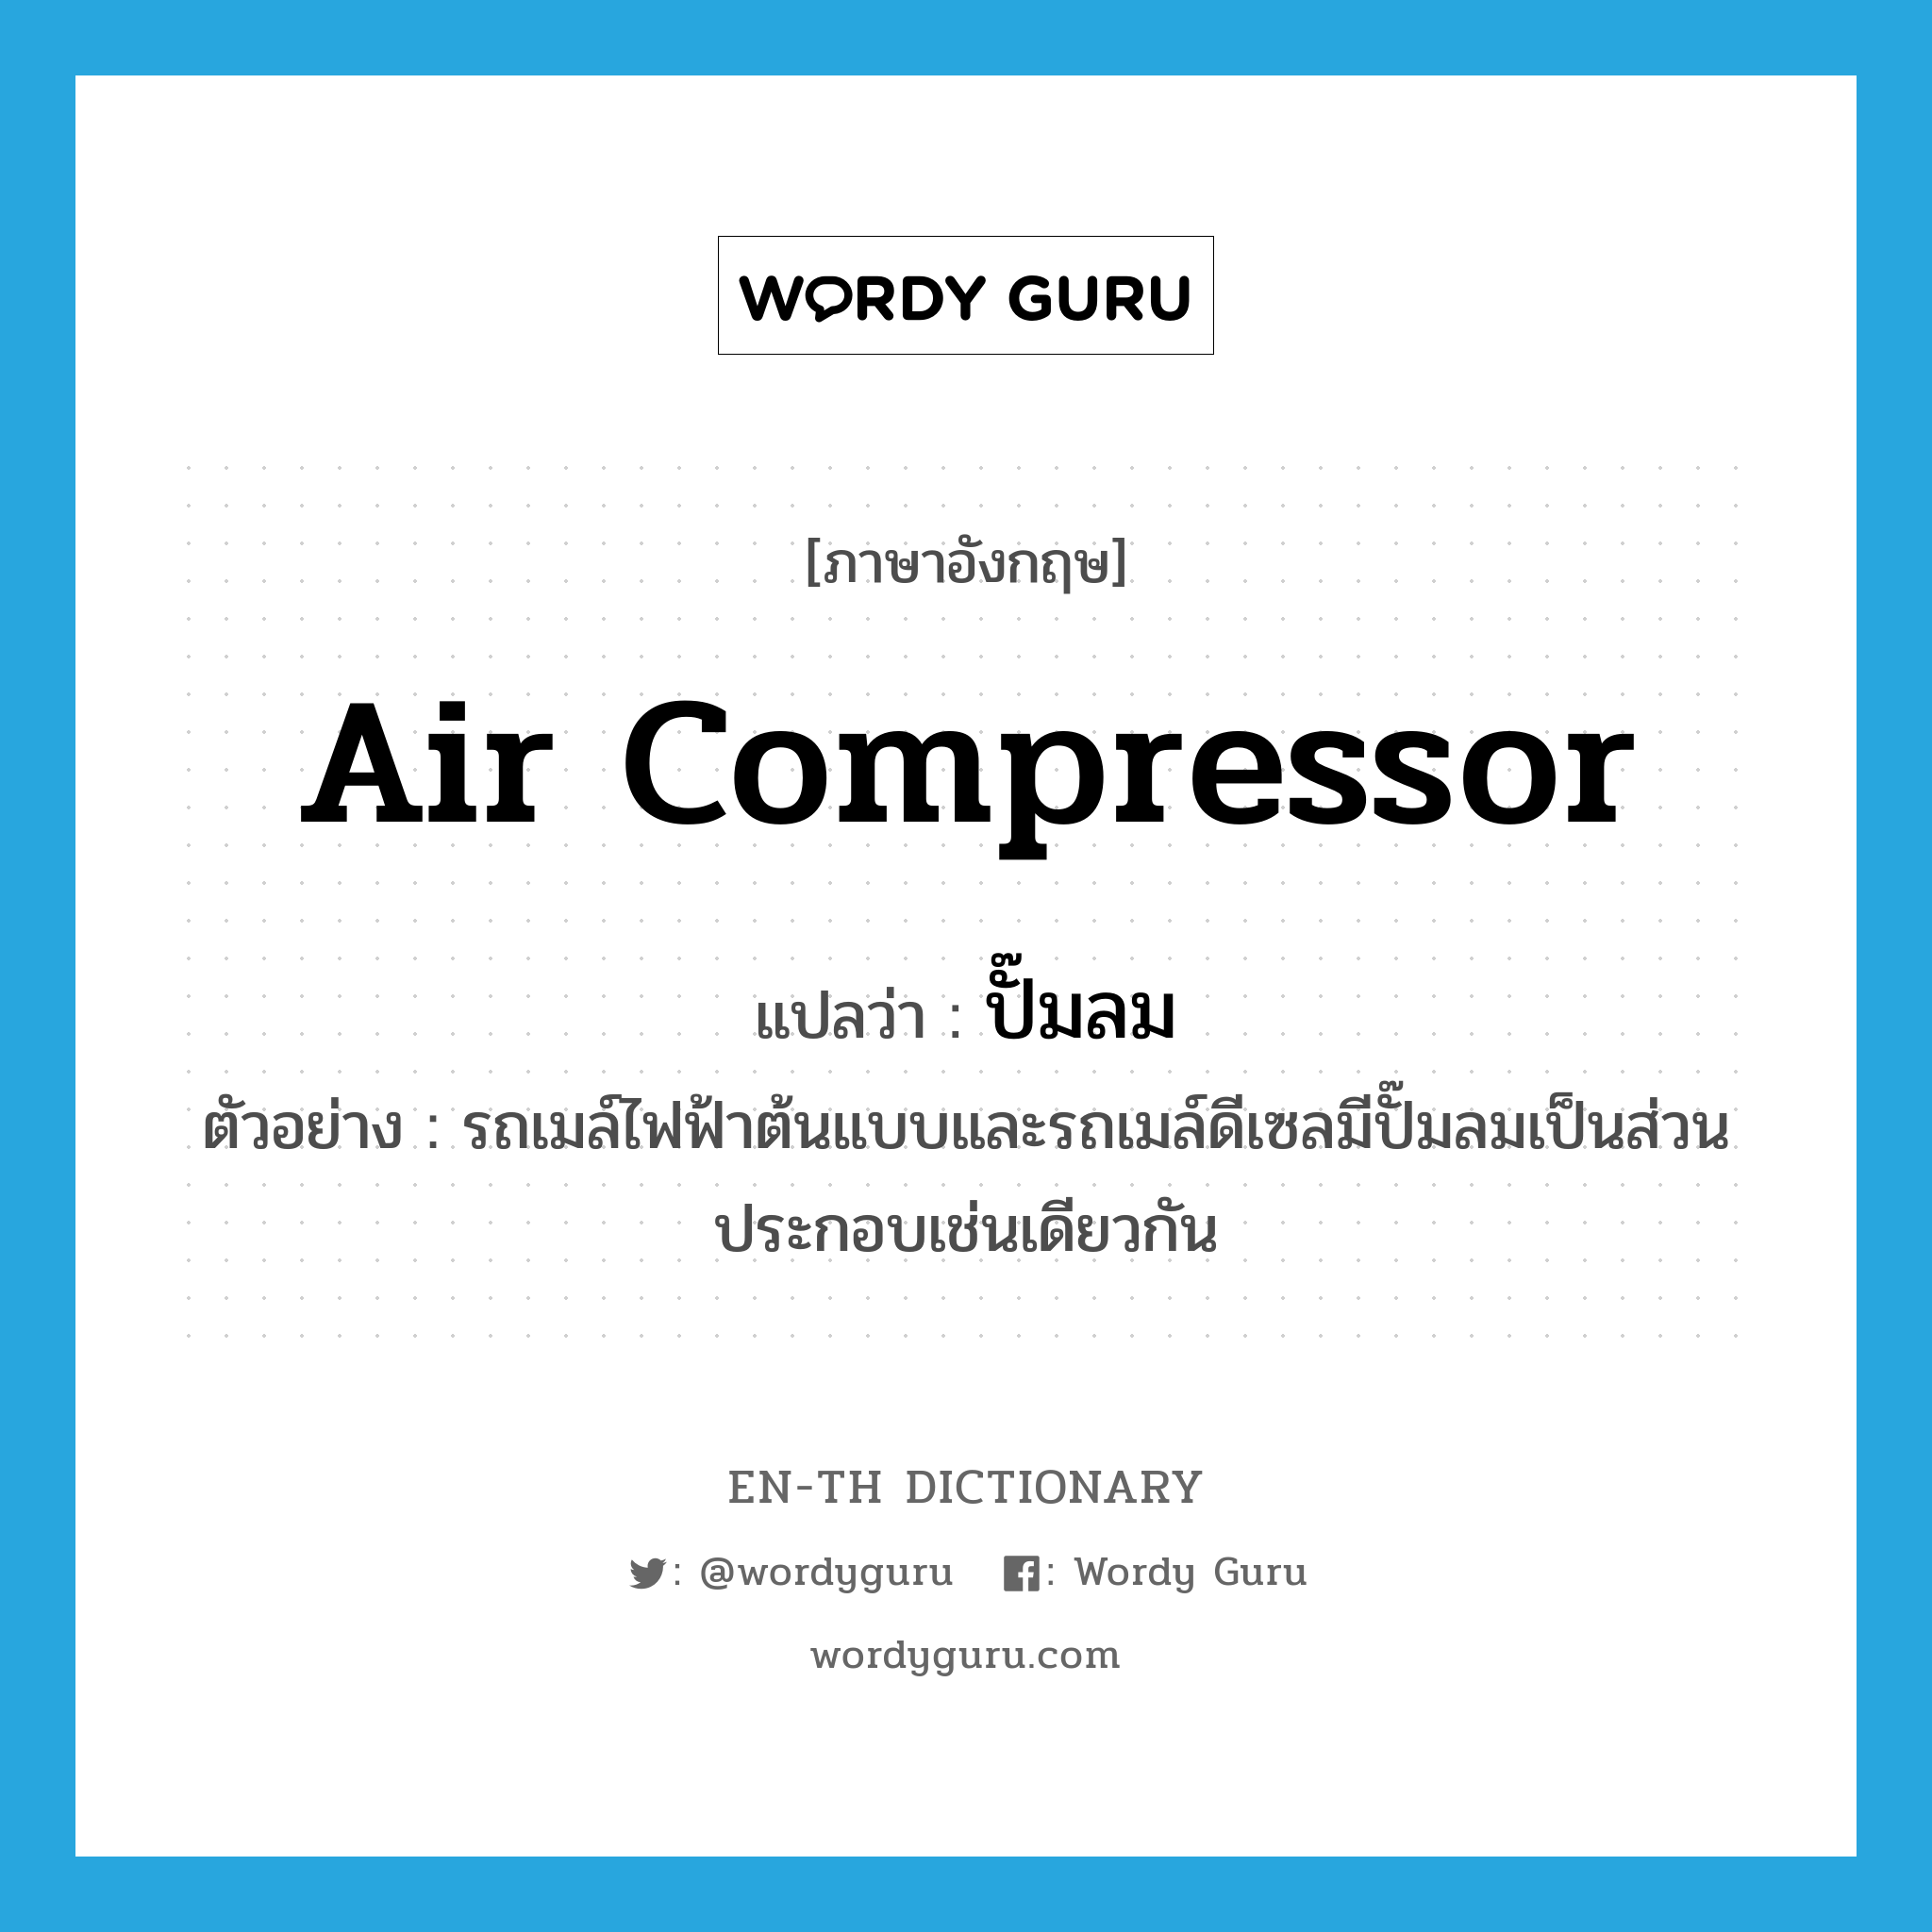 air compressor แปลว่า?, คำศัพท์ภาษาอังกฤษ air compressor แปลว่า ปั๊มลม ประเภท N ตัวอย่าง รถเมล์ไฟฟ้าต้นแบบและรถเมล์ดีเซลมีปั๊มลมเป็นส่วนประกอบเช่นเดียวกัน หมวด N